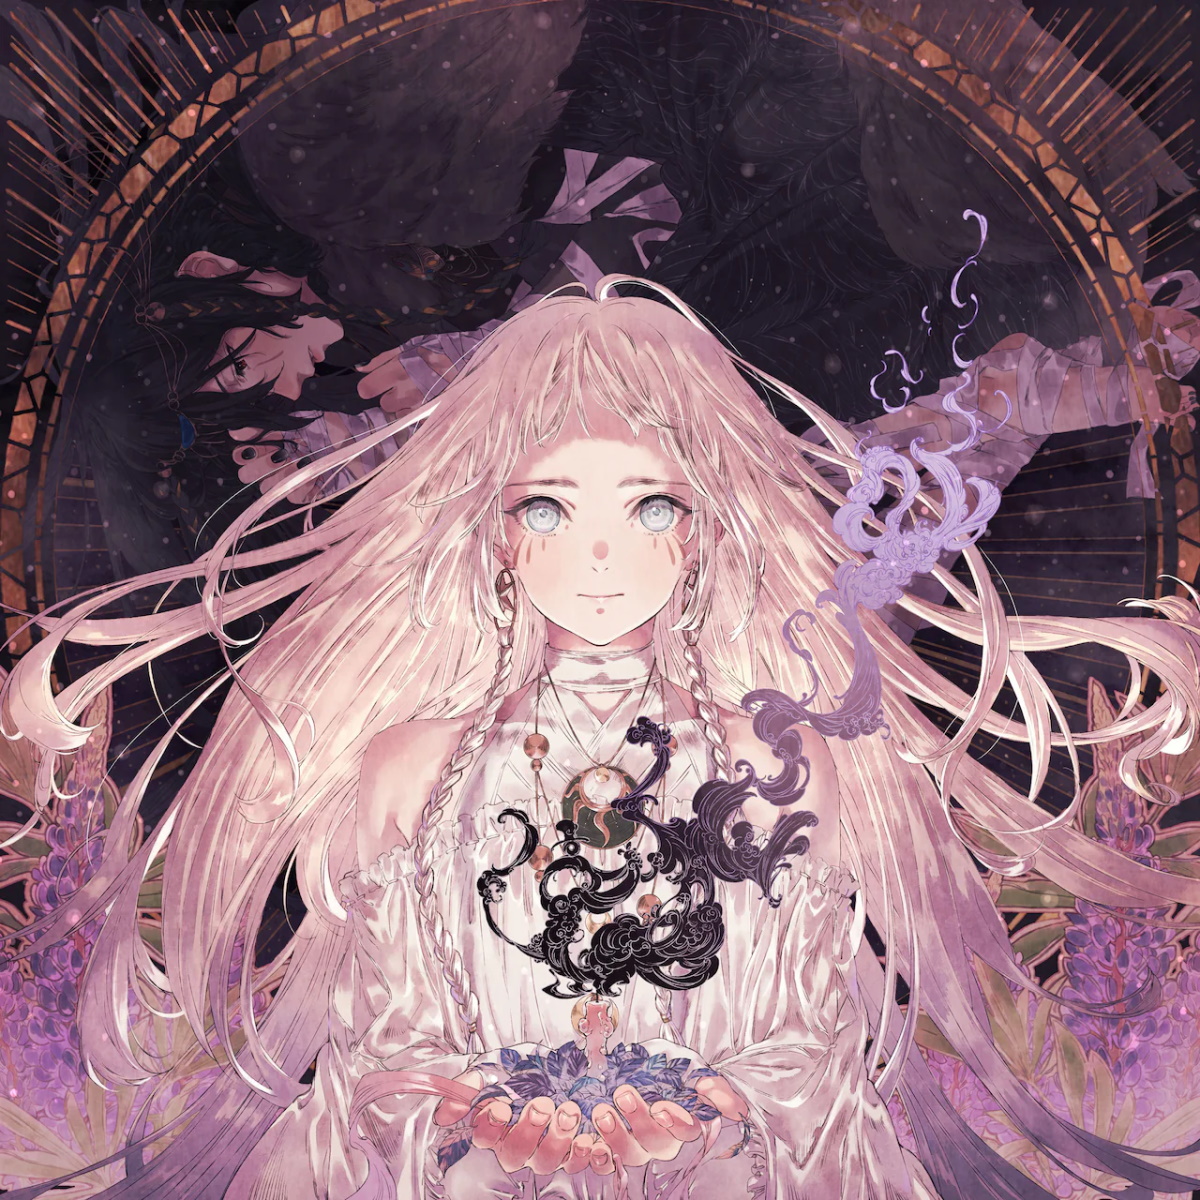 Cover art for『Eve - Shirayuki』from the release『Shirayuki』